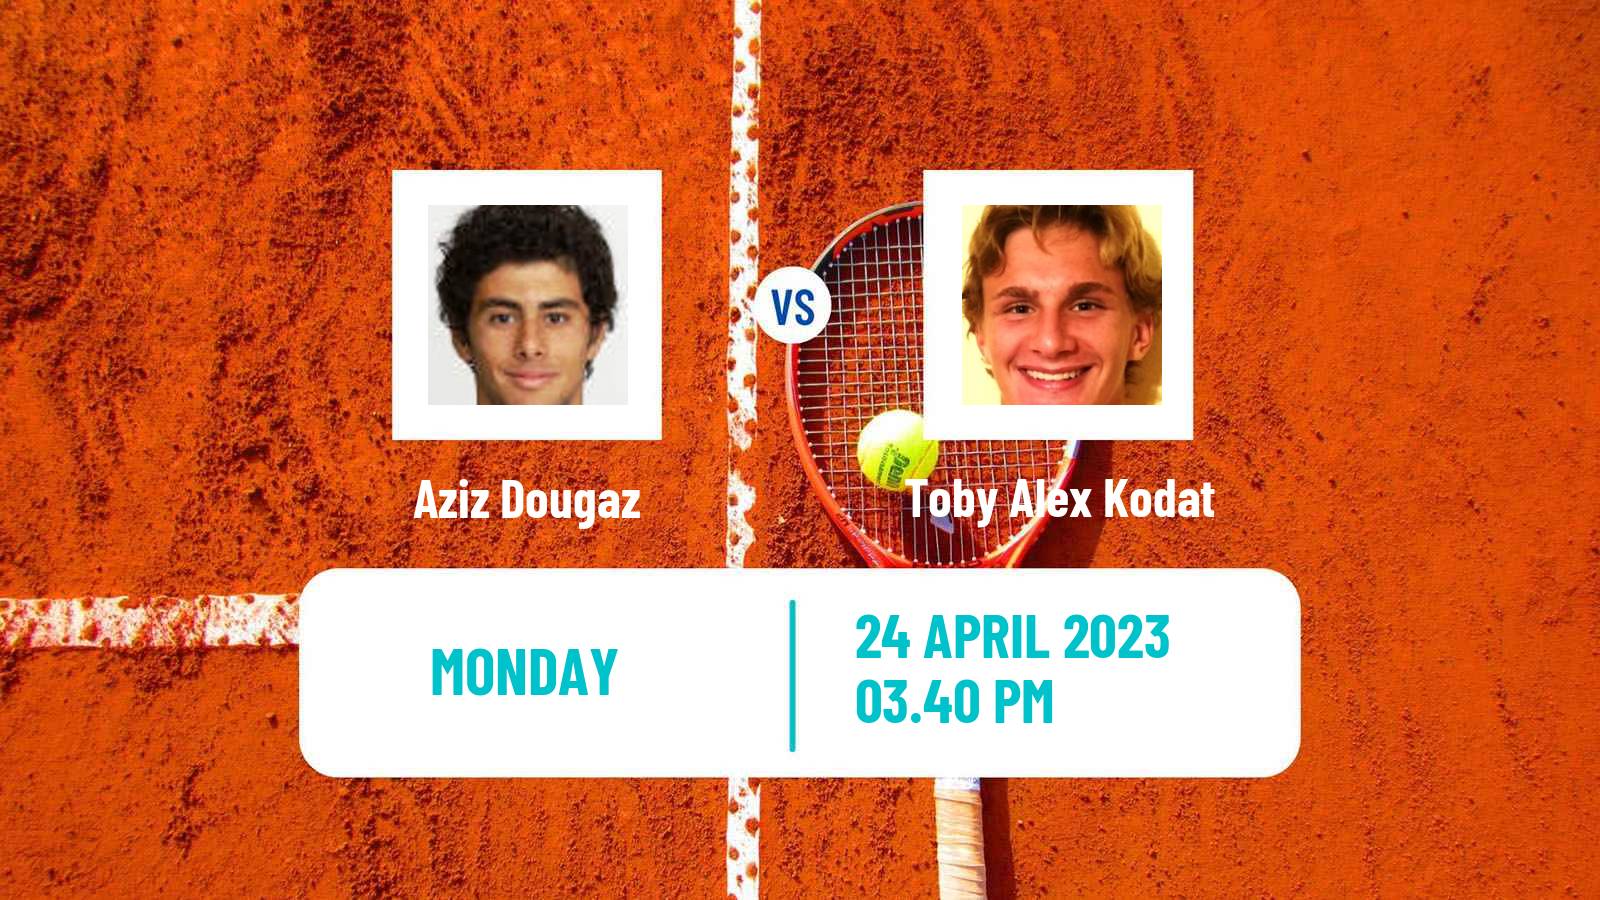 Tennis ATP Challenger Aziz Dougaz - Toby Alex Kodat